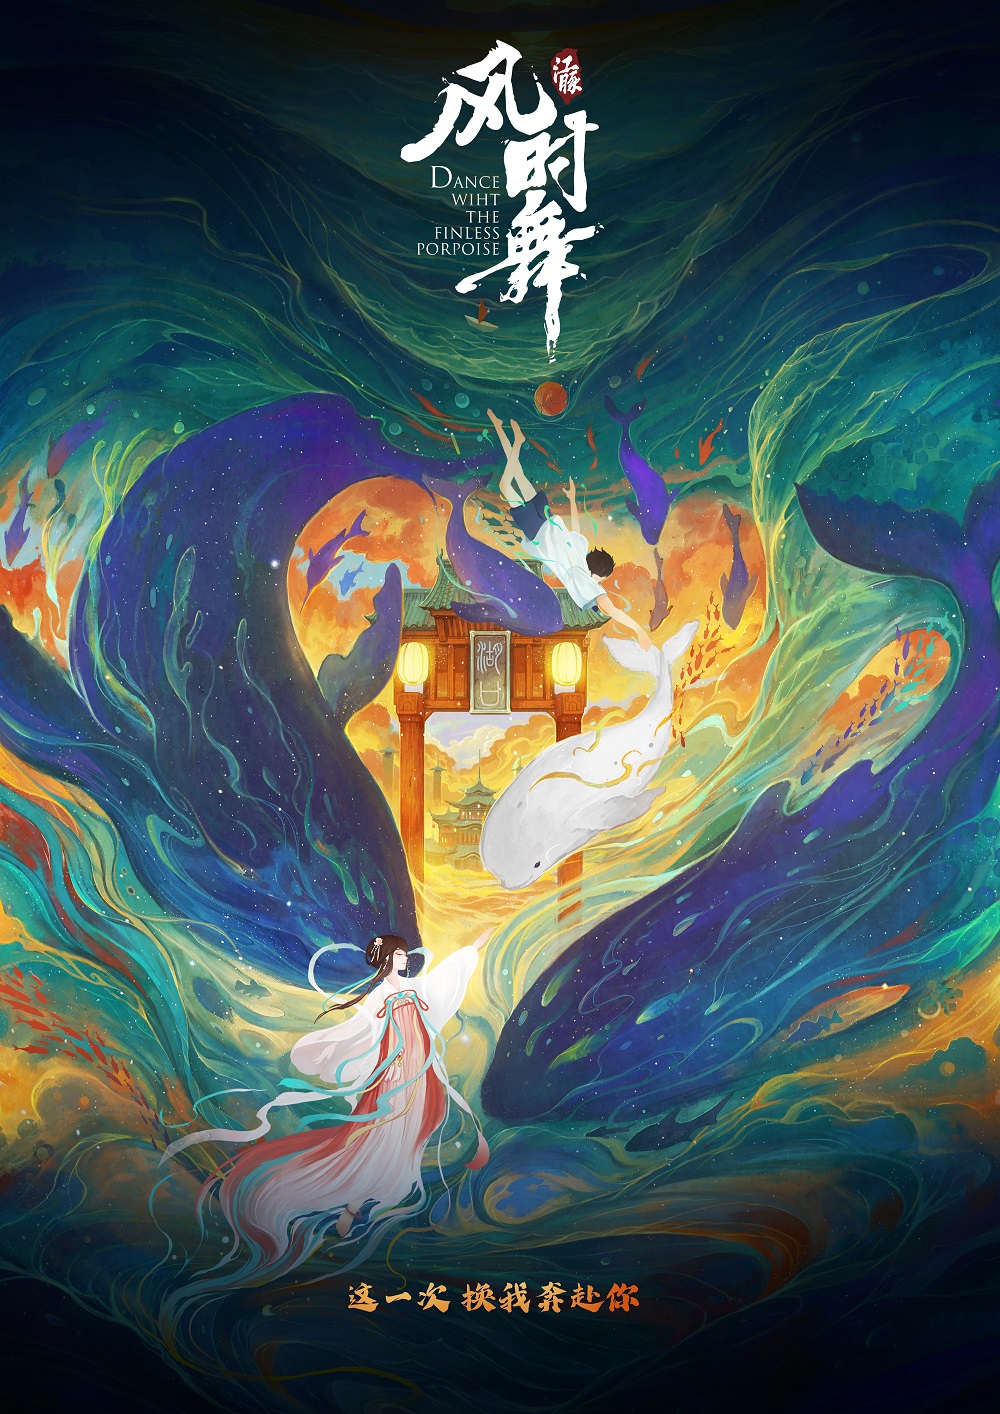 白鲟灭绝为长江生态保护敲响警钟 电影《江豚·风时舞》以动画传递公益价值